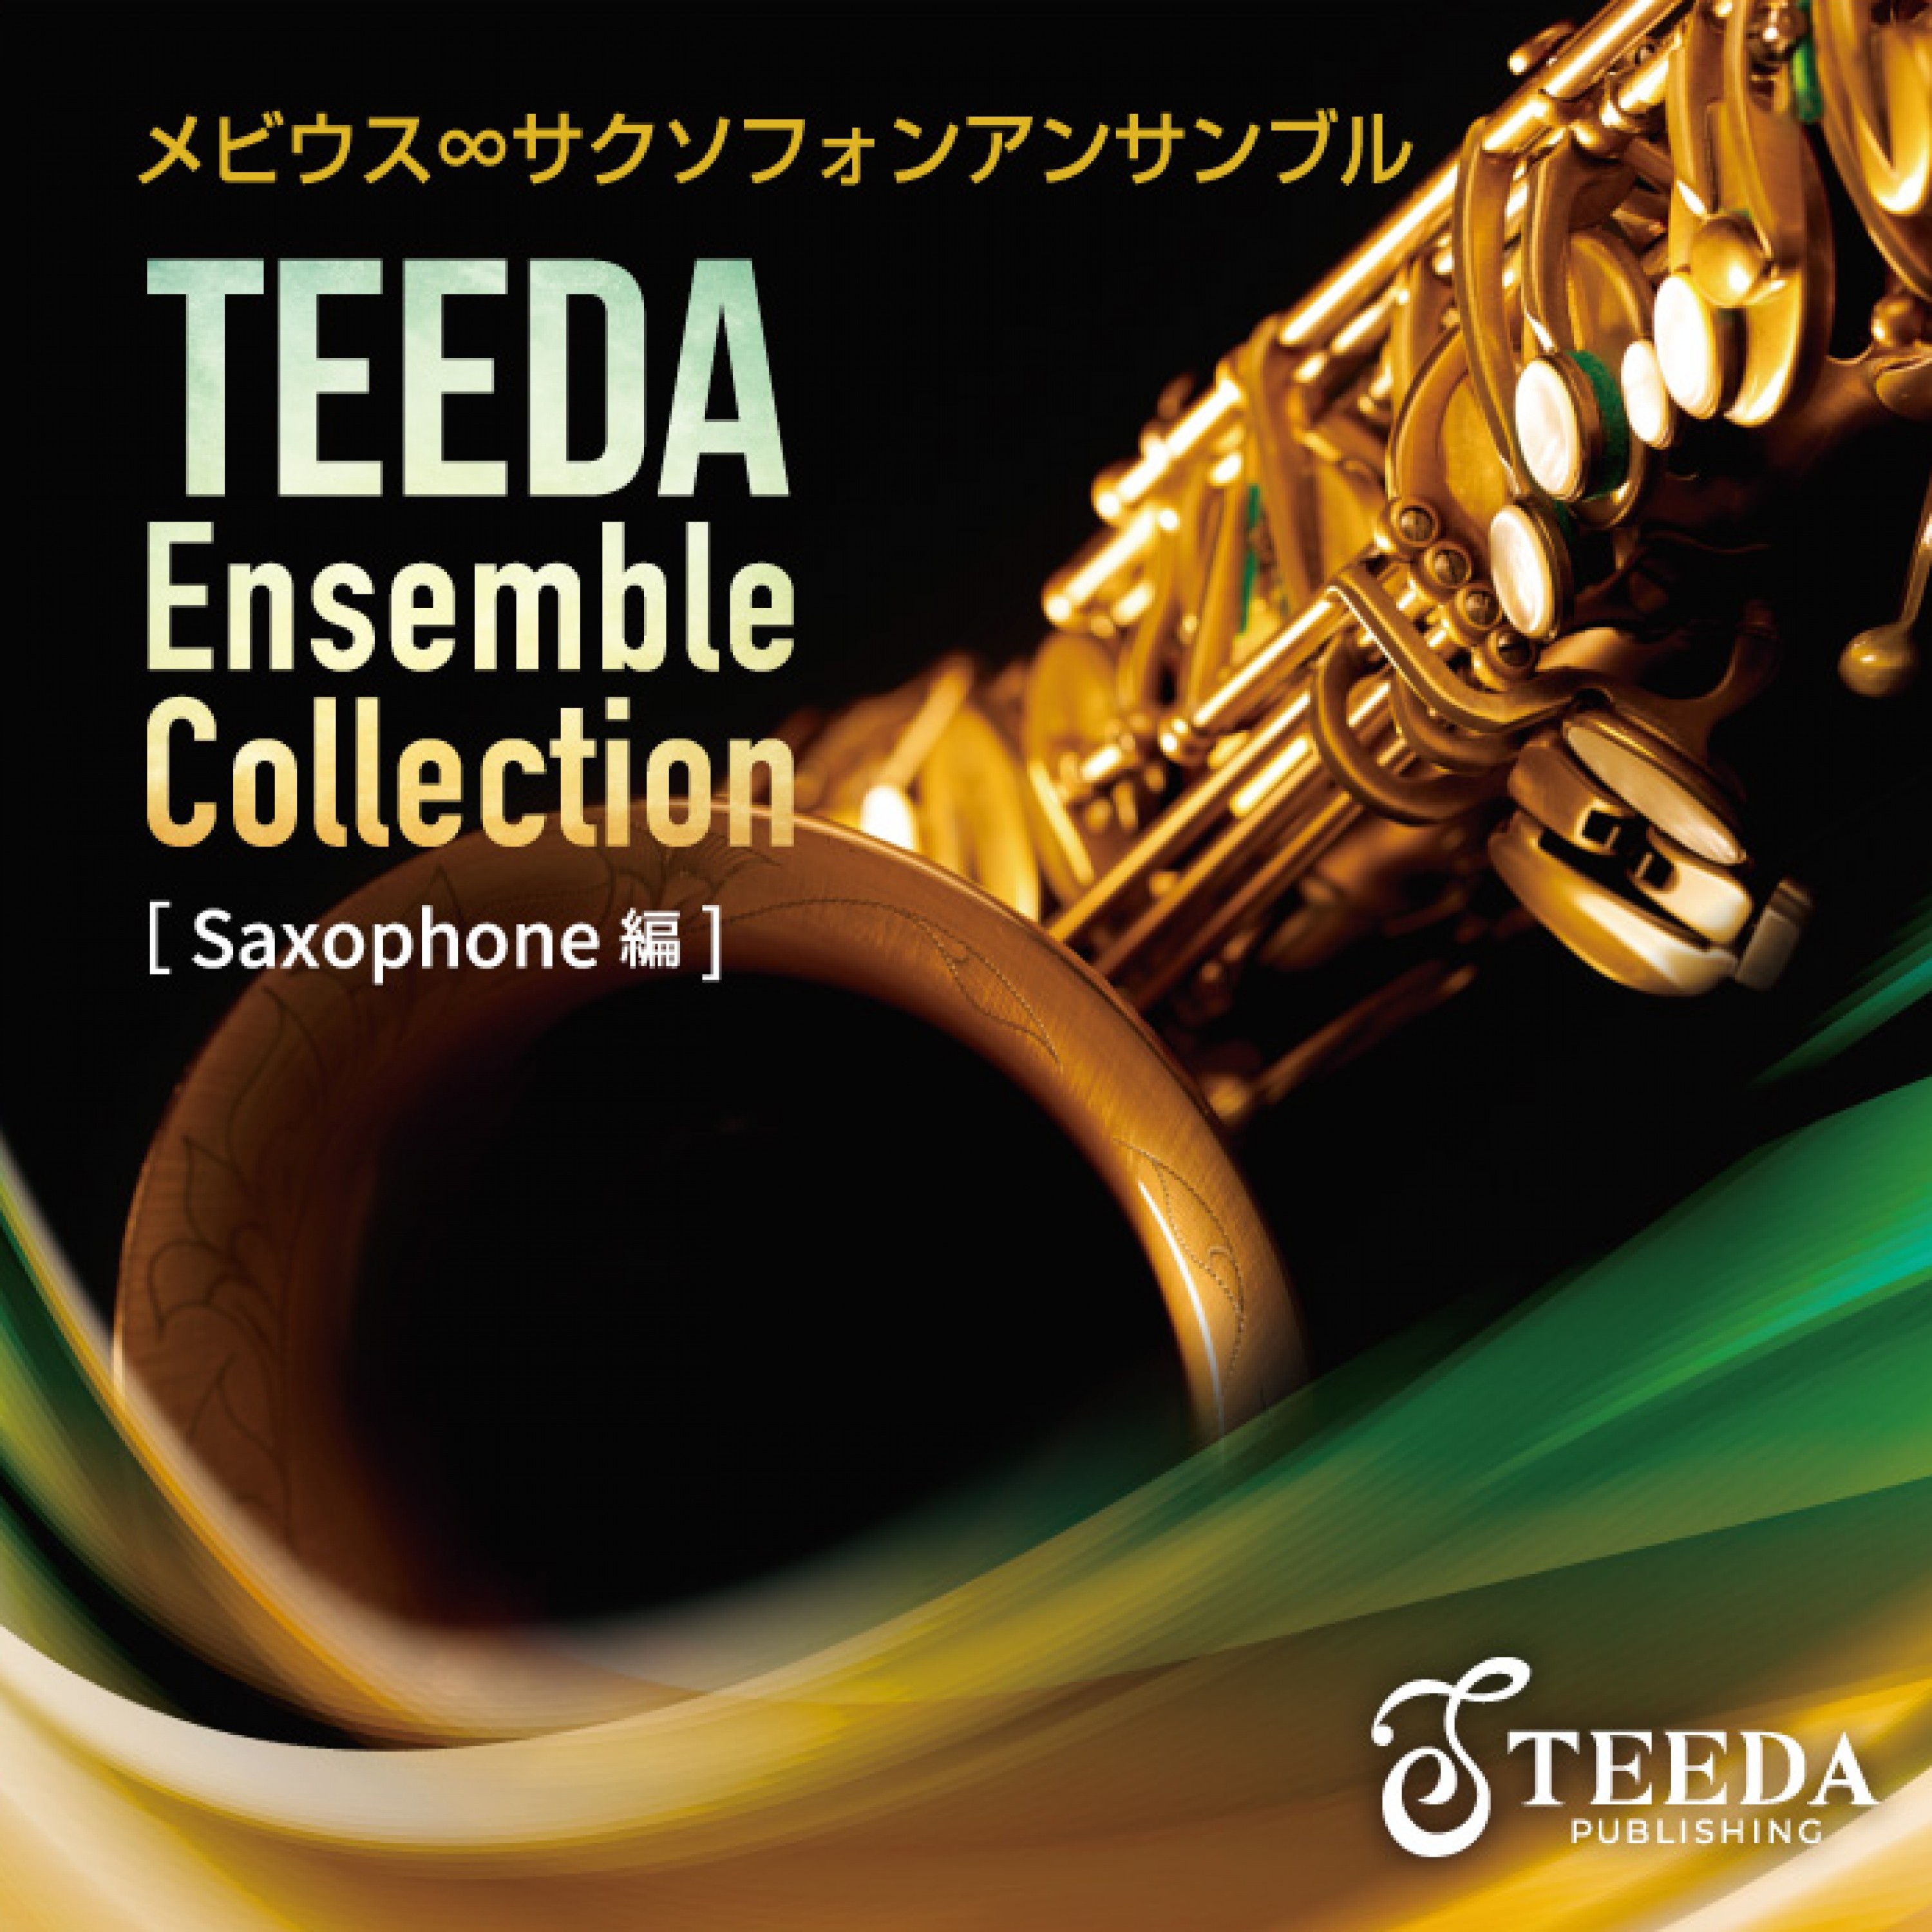 Teeda Ensemble Collection 〔Saxophone 編〕